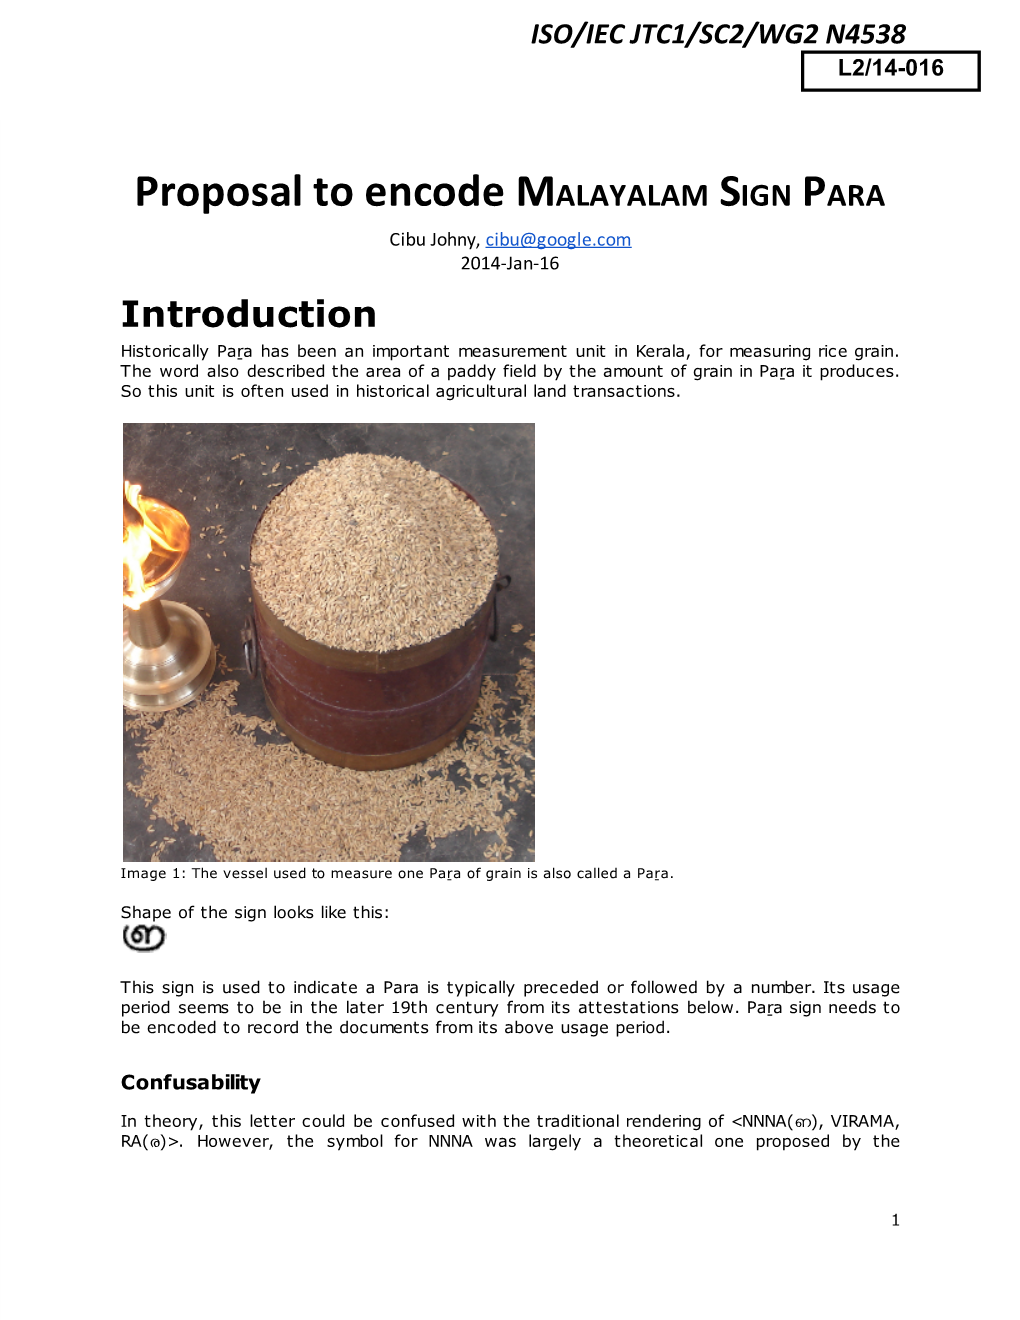 Proposal to Encode MALAYALAM SIGN PARA